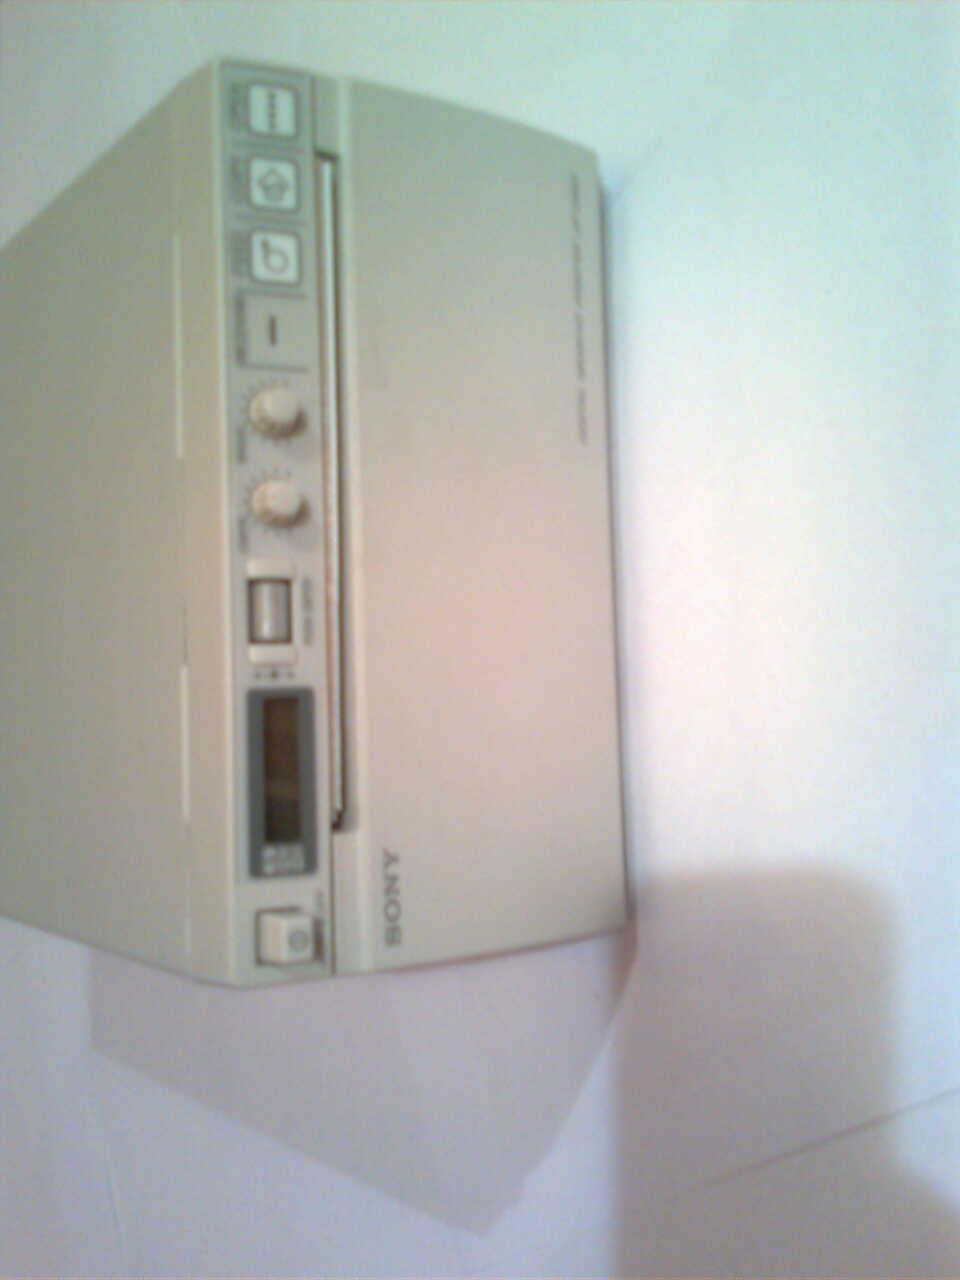 Cyfrowy Videoprinter  SONY UP-D897, Katowice, śląskie